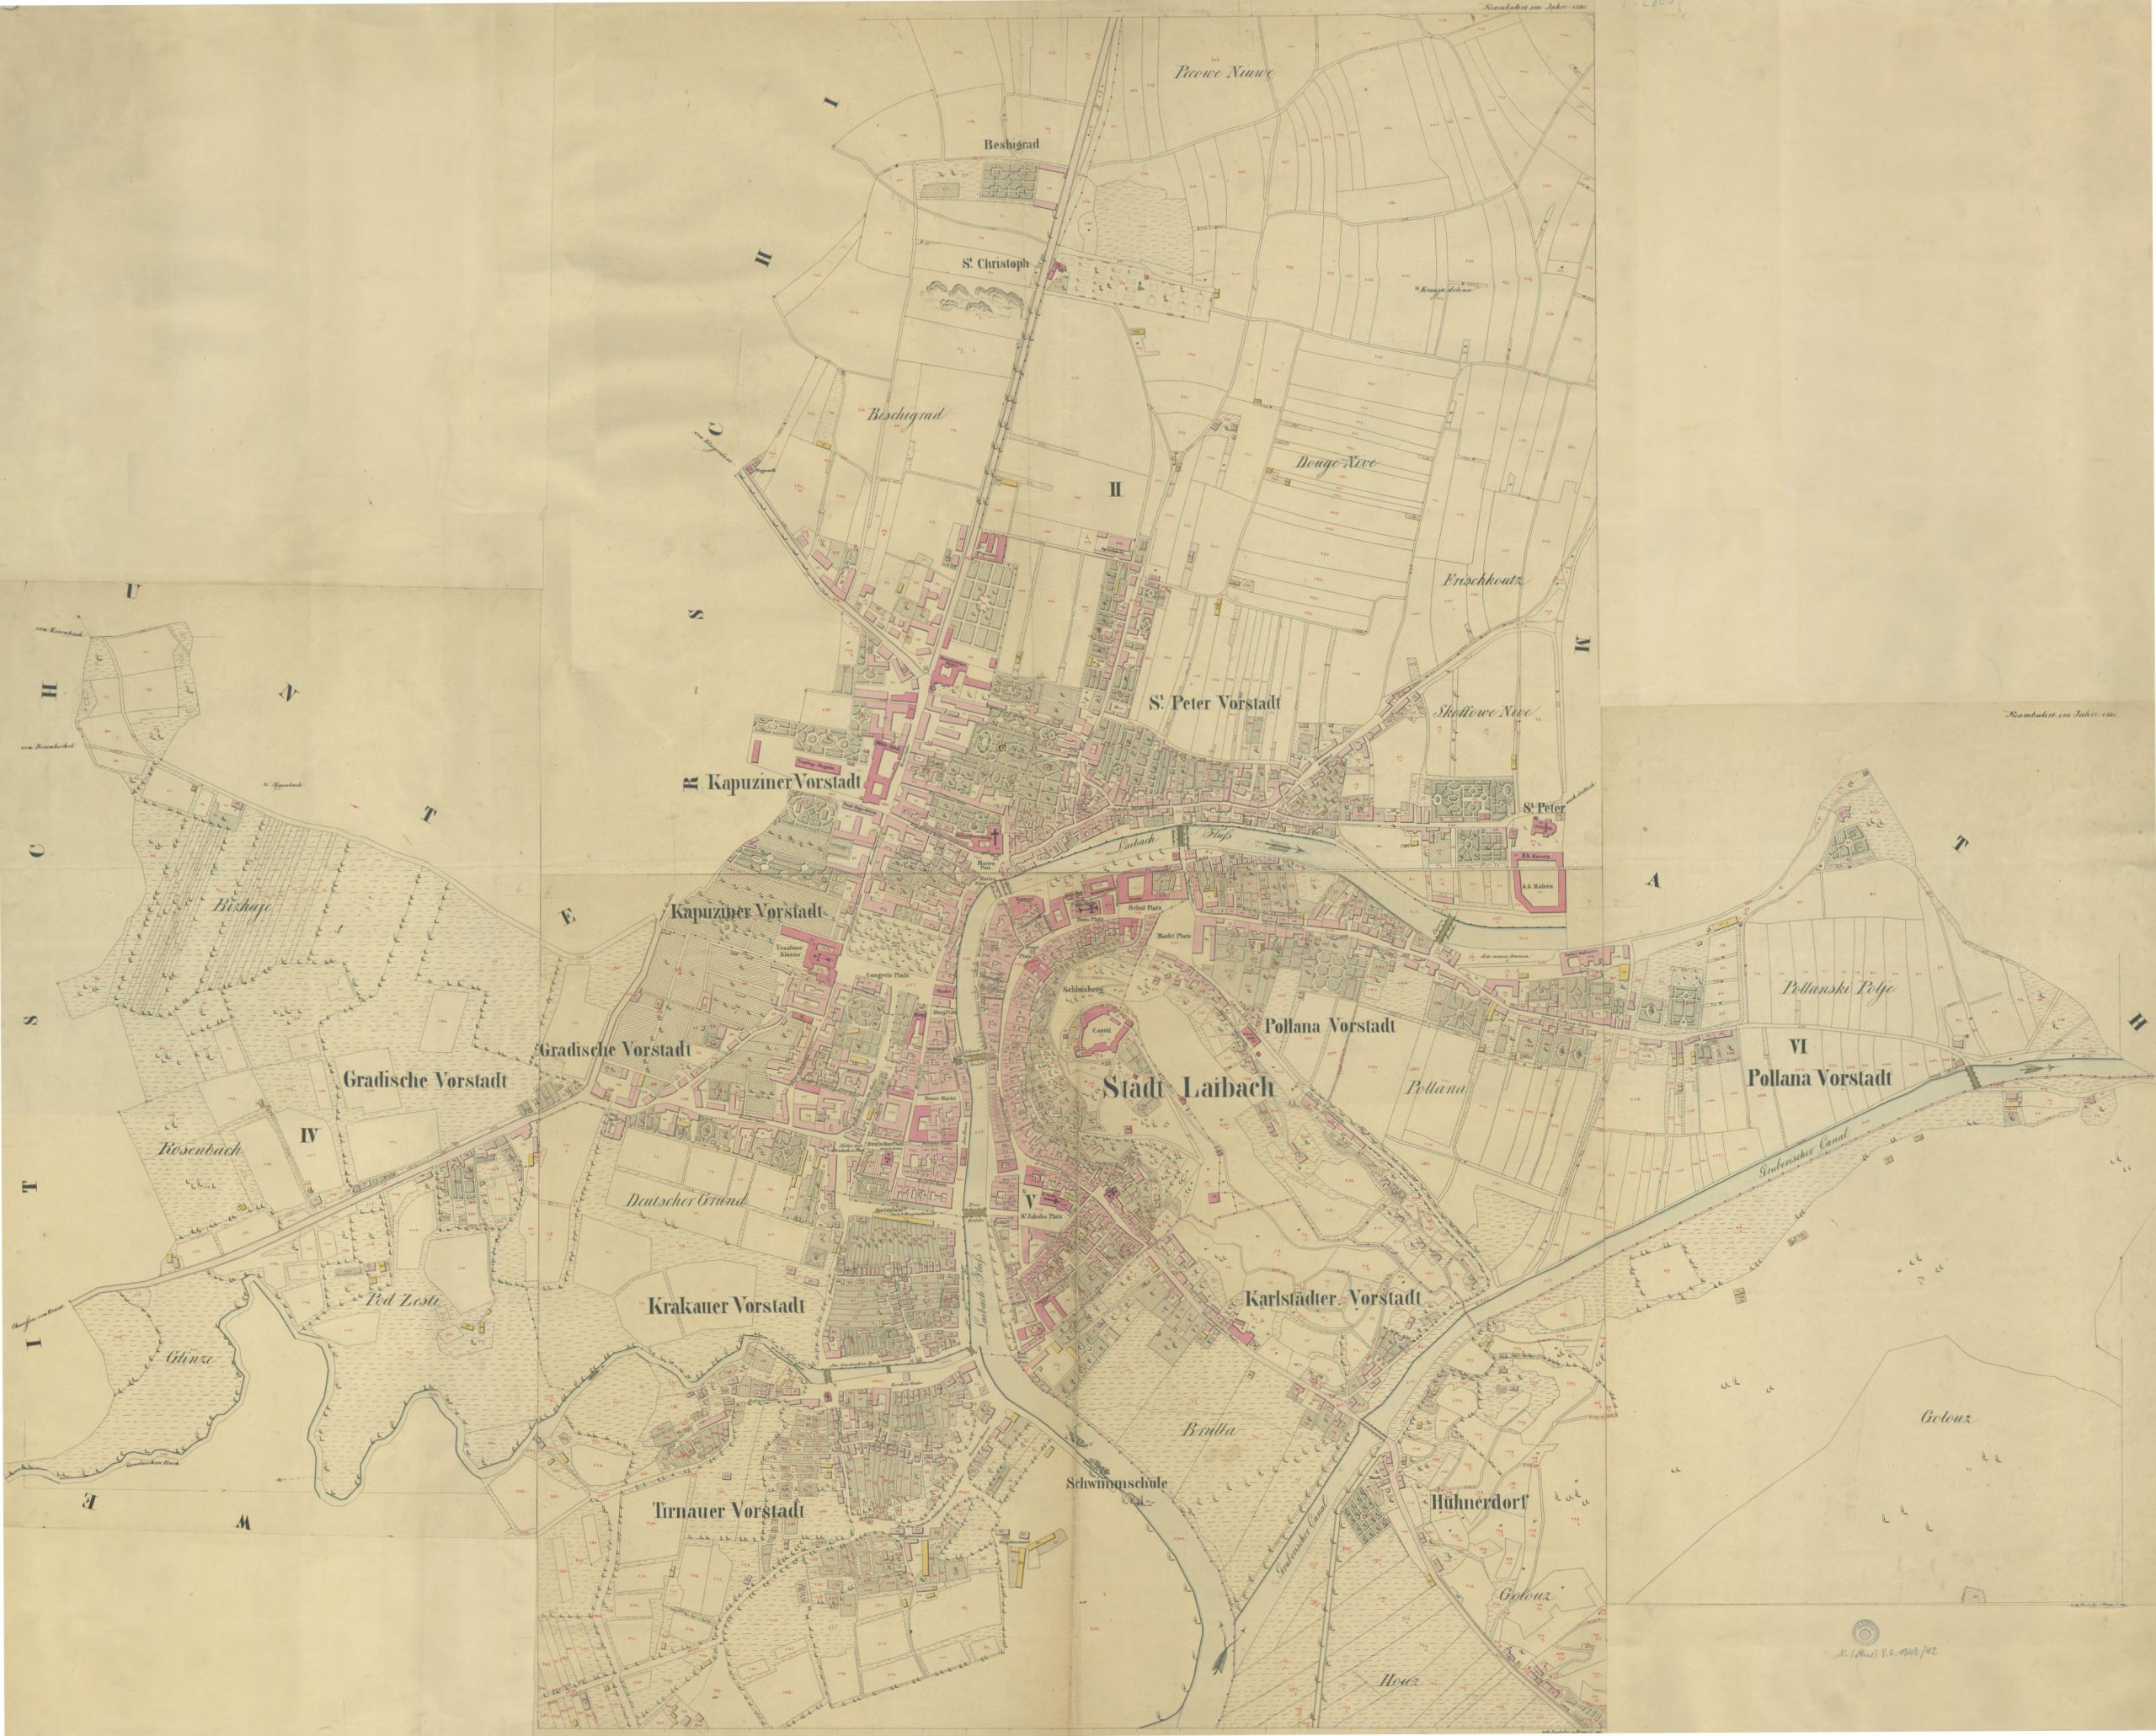 Katastrski načrt mesta Ljubljane 1841